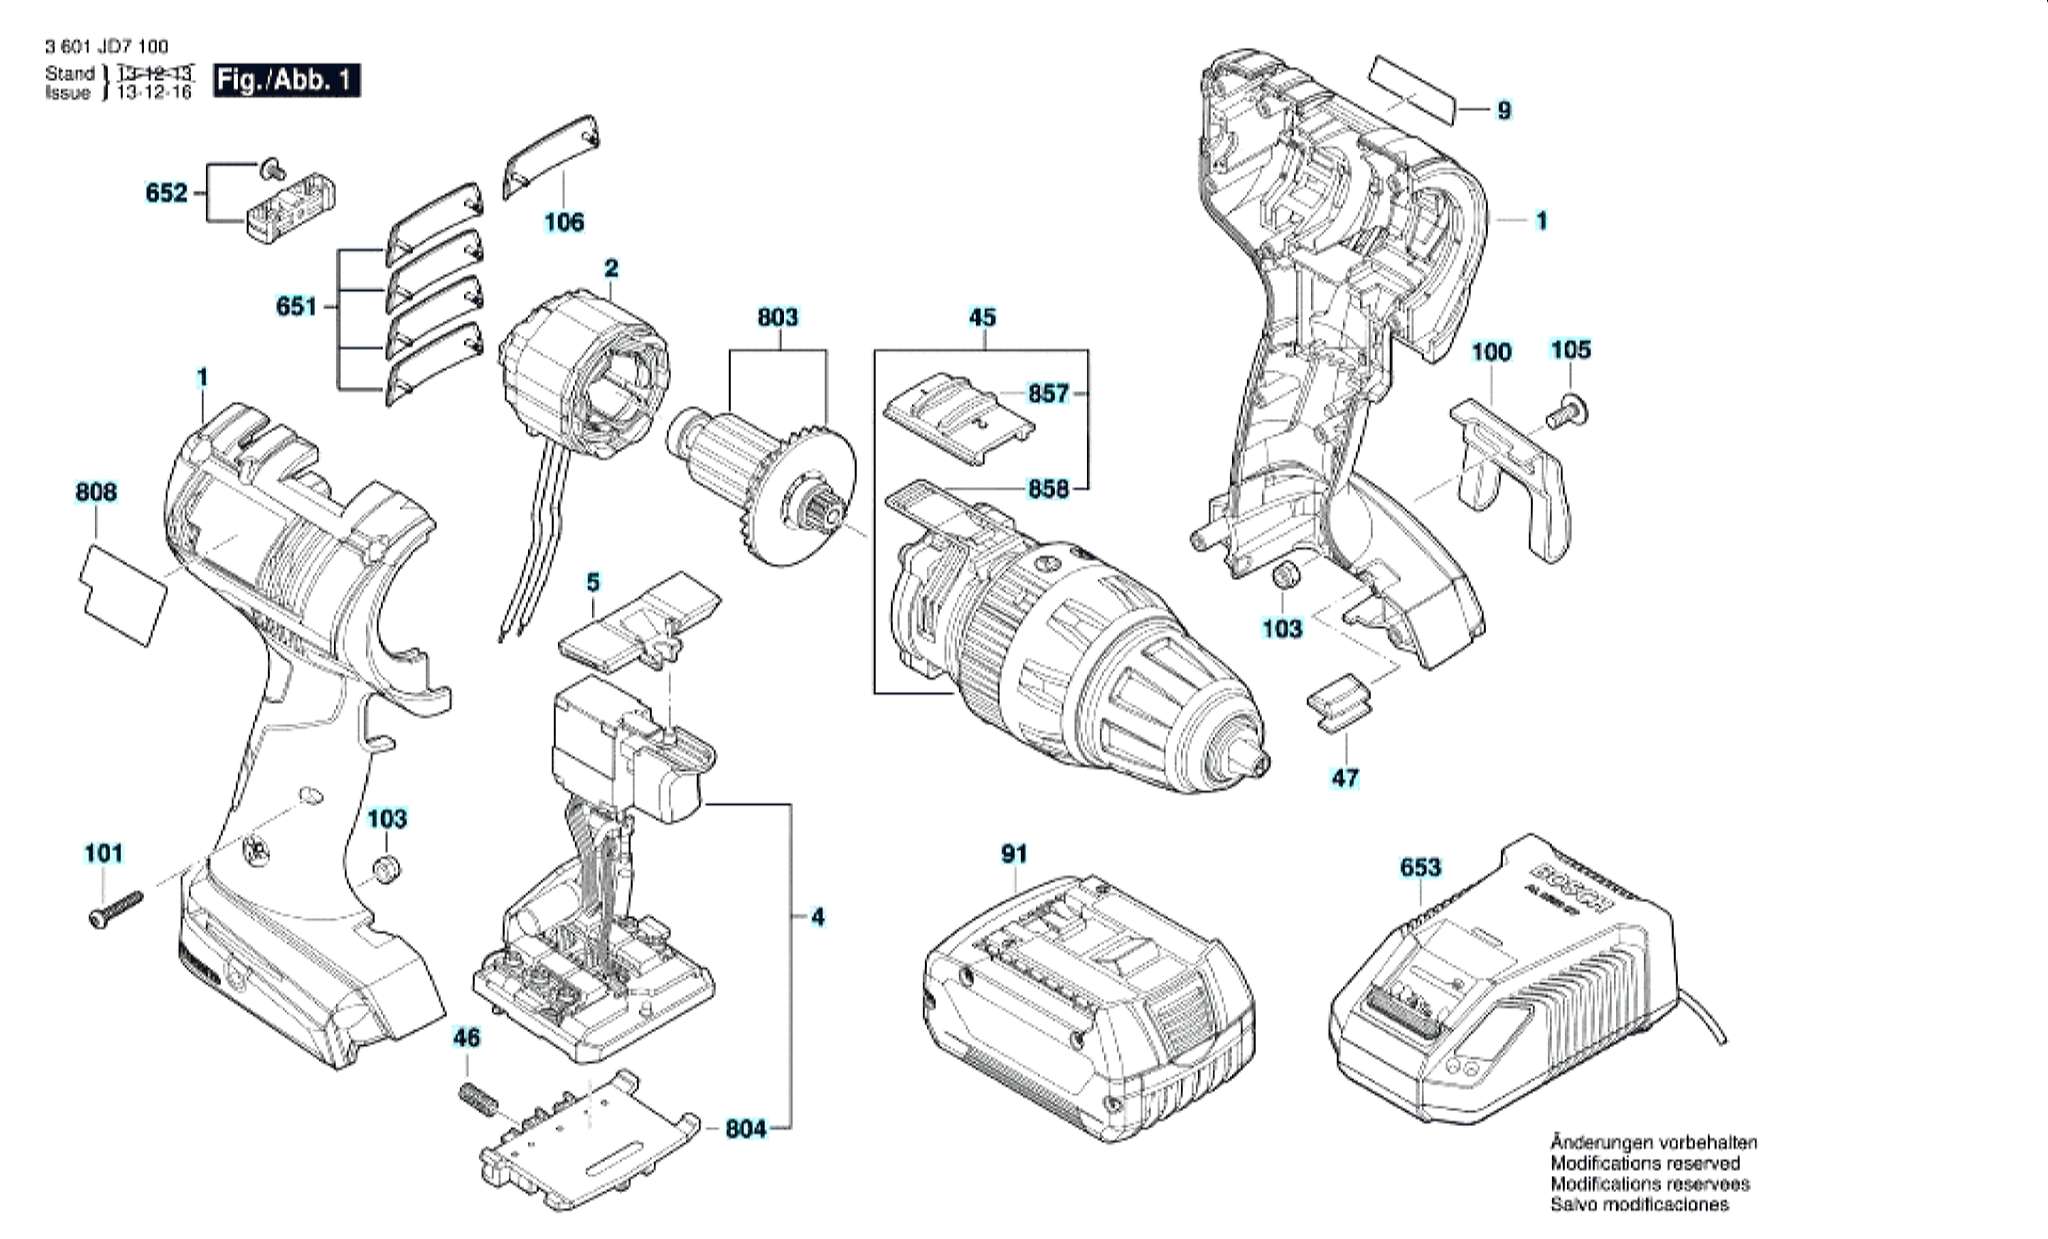 Запчасти, схема и деталировка Bosch GSB 18 V-EC (ТИП 3601JD7100)